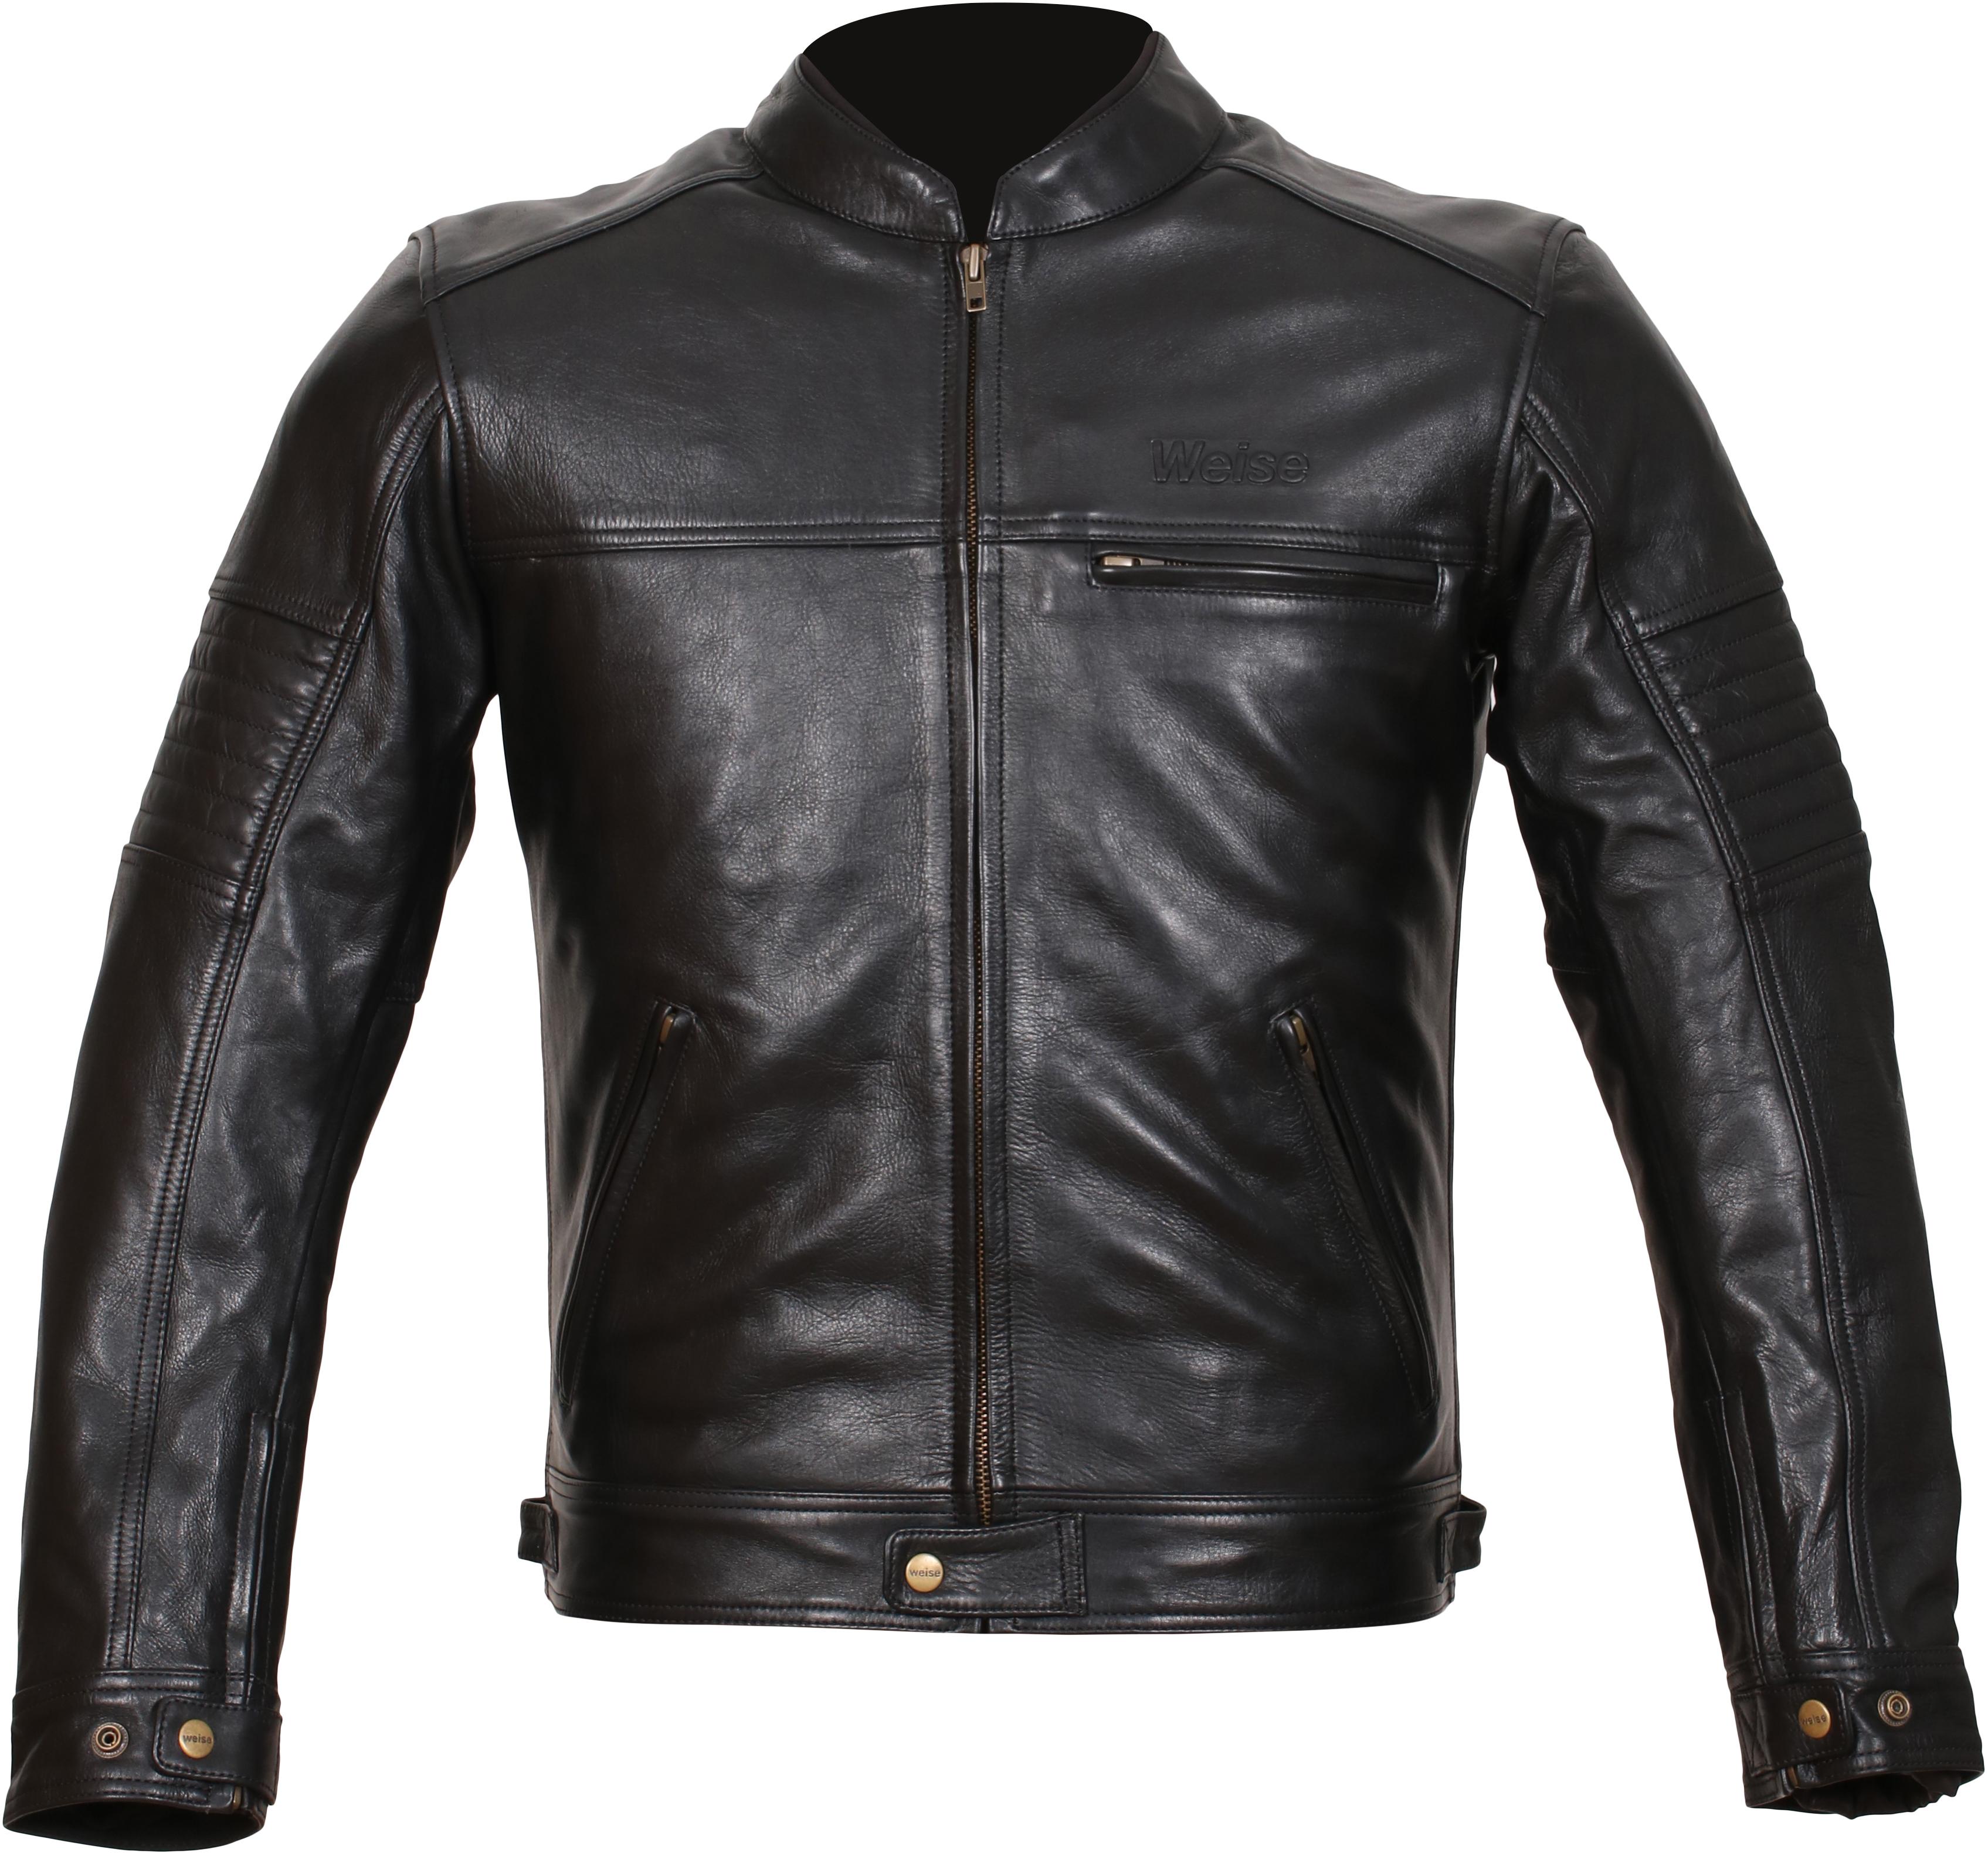 Weise Cabot Leather Motorcycle Jacket - Black, 42